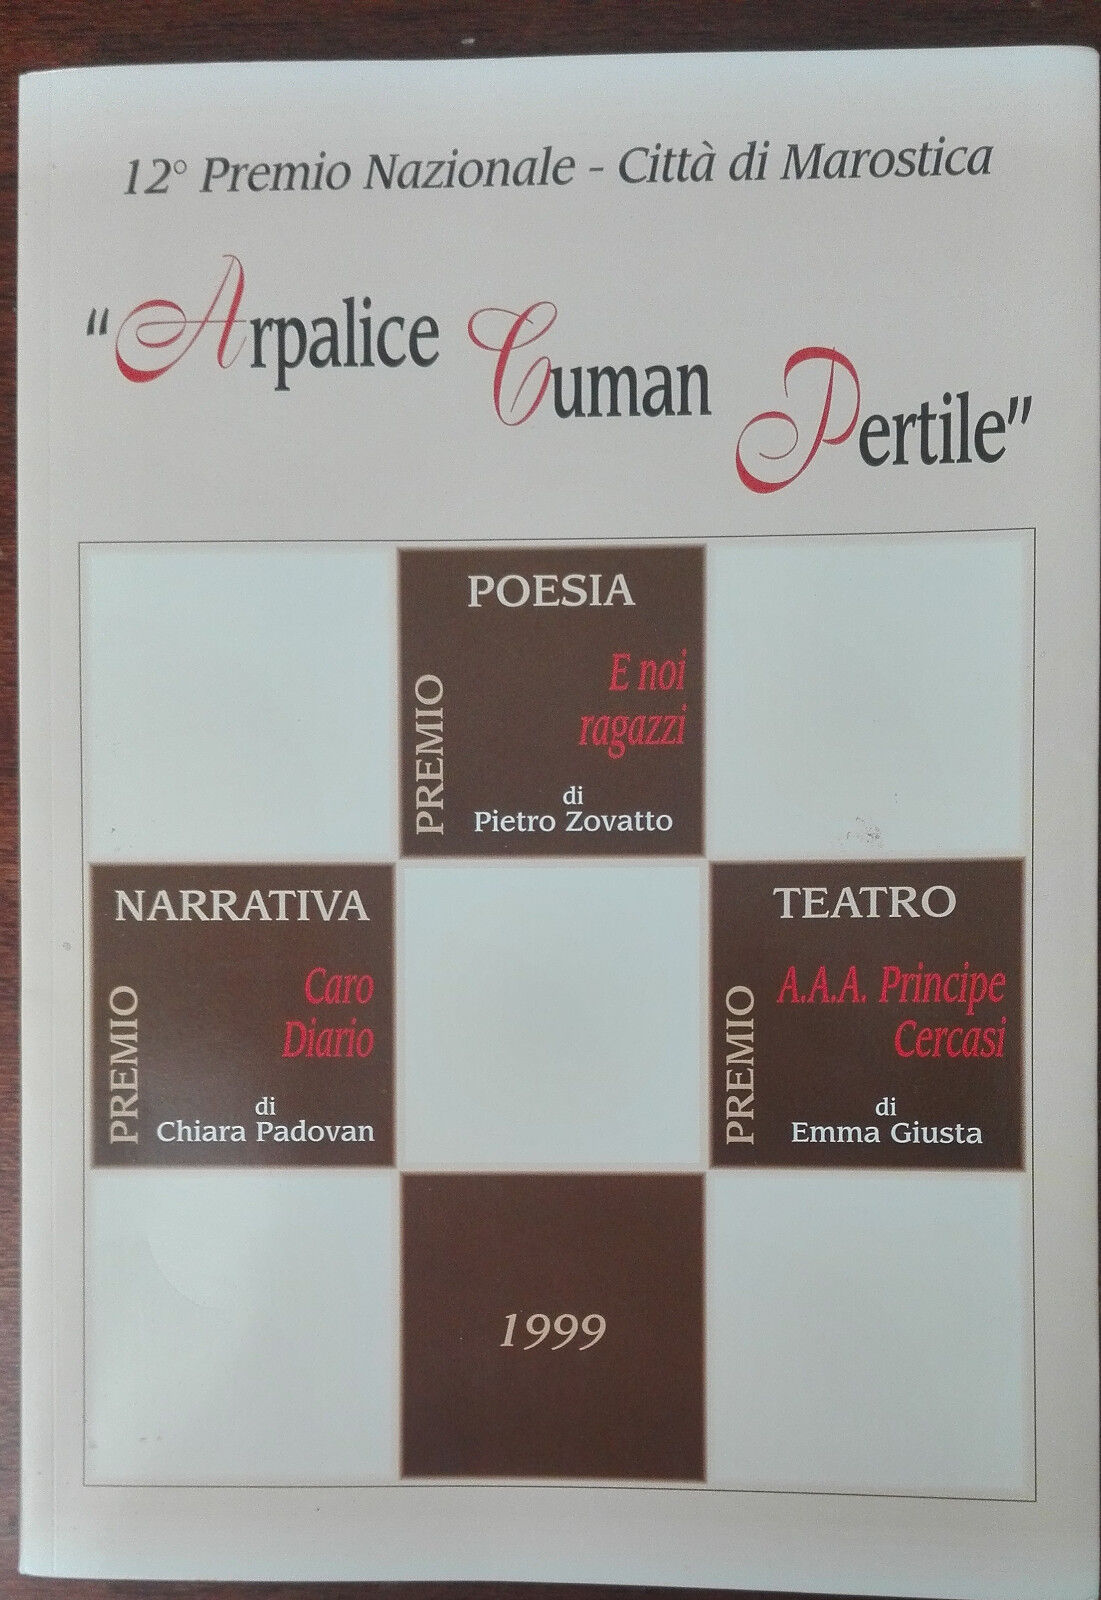 Arpalice Cuman Pertile - AA.VV. - Comune di Marostica,1999 - A